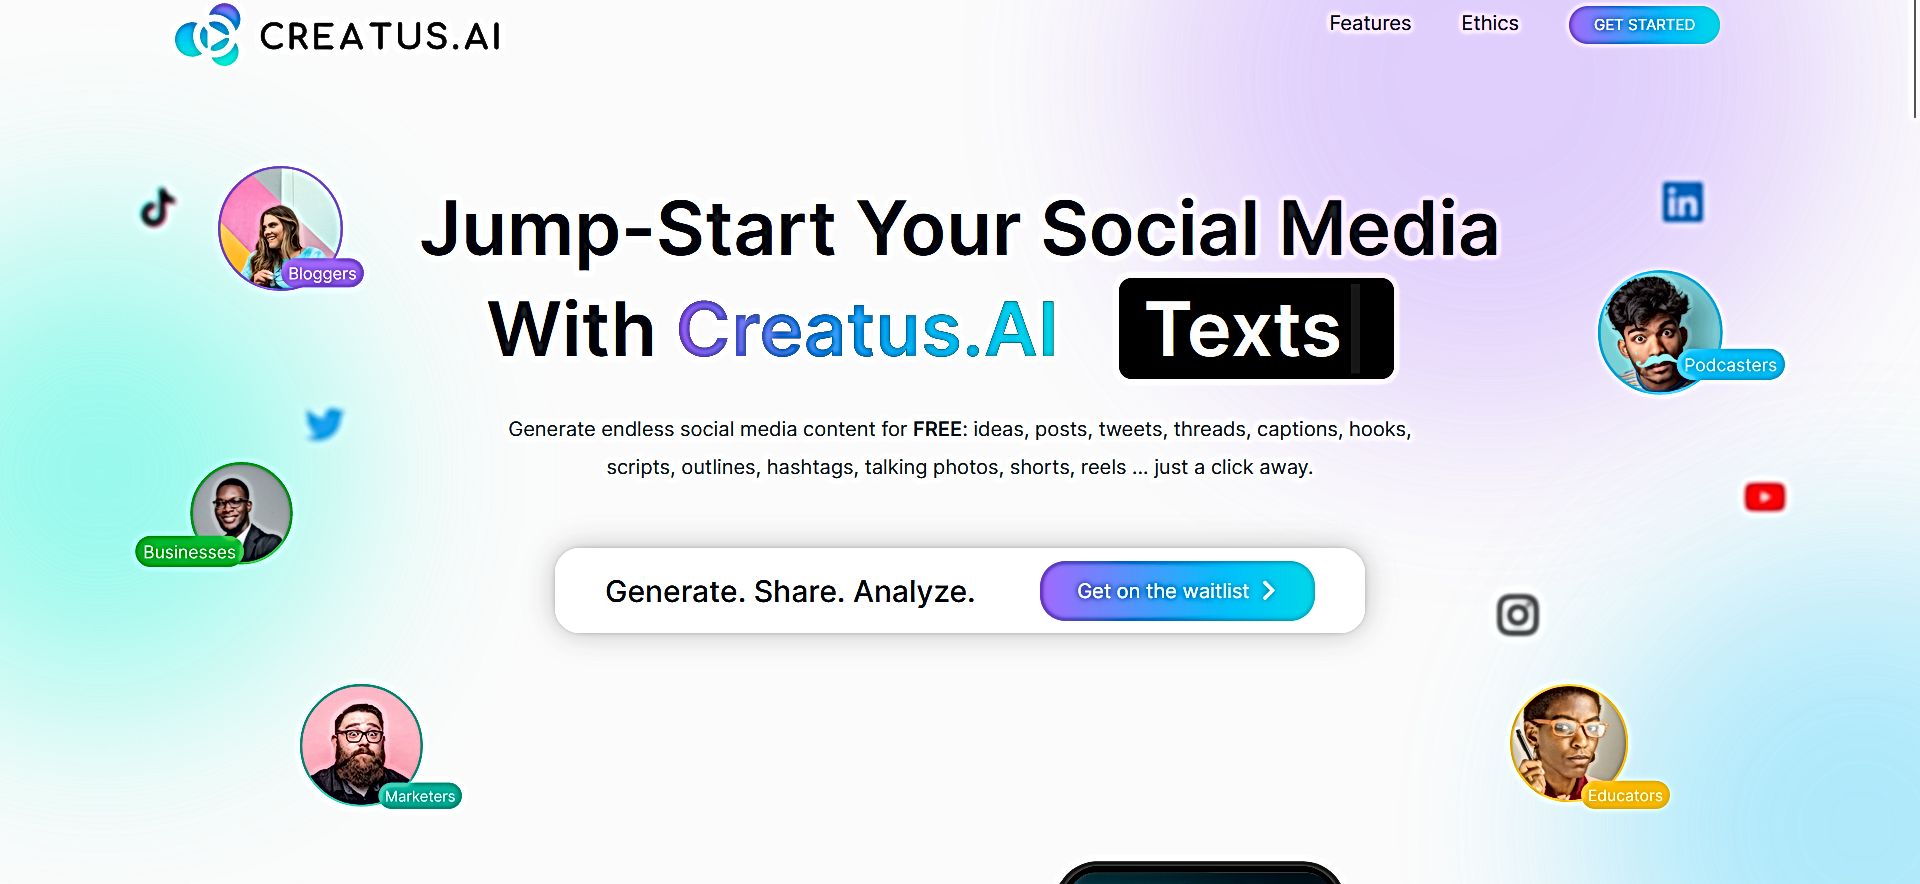 Creatus.AI featured